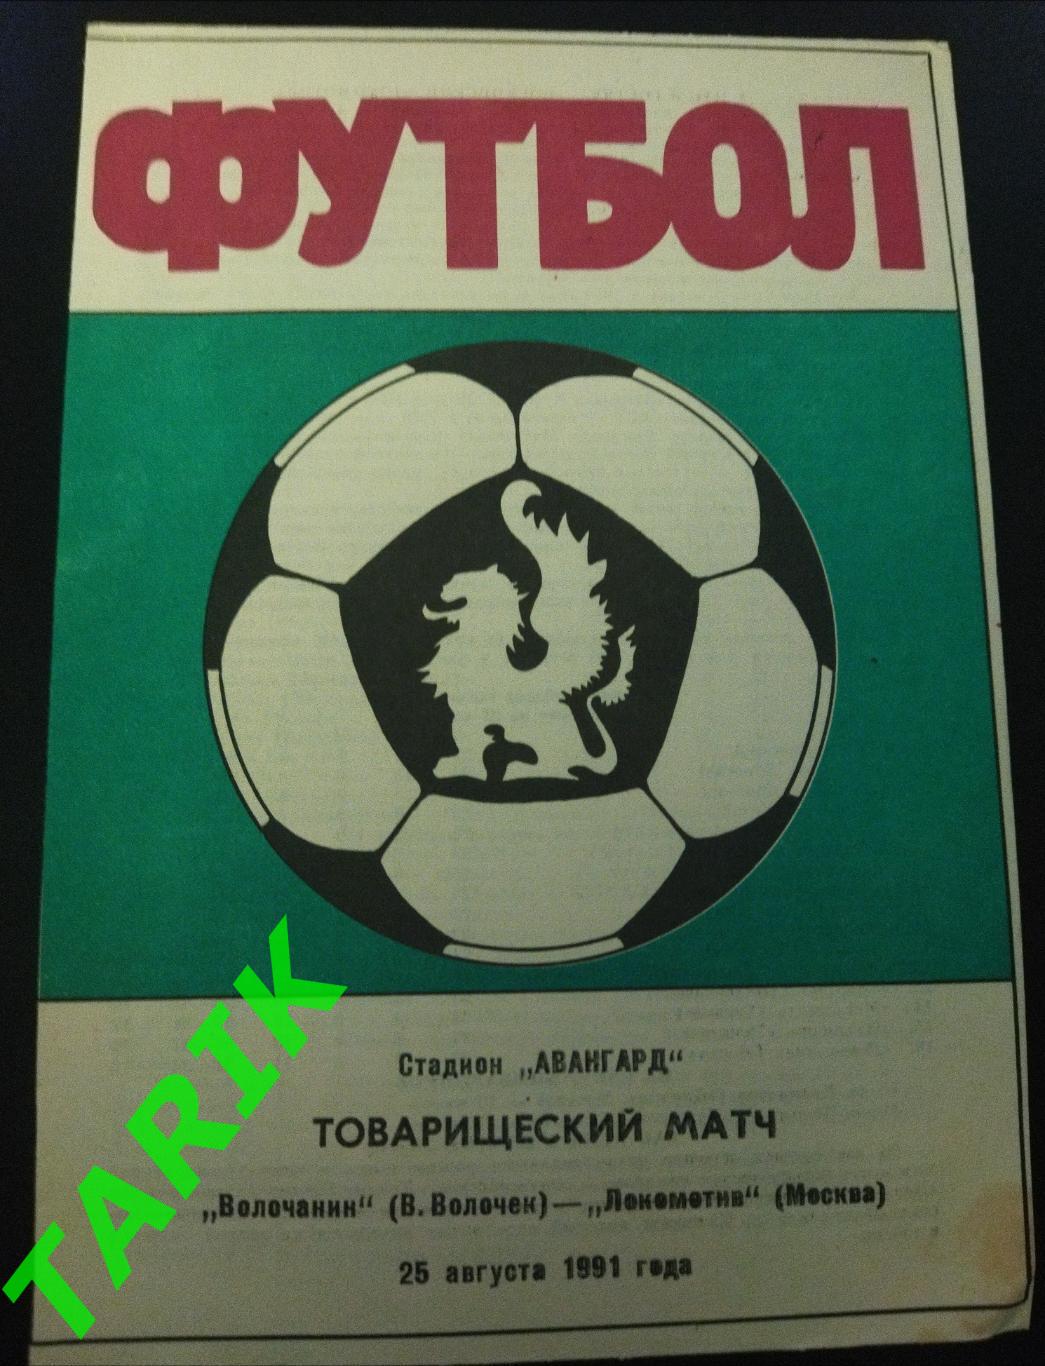 Волочанин (В.Волочек) - Локомотив Москва 1991 Т. М